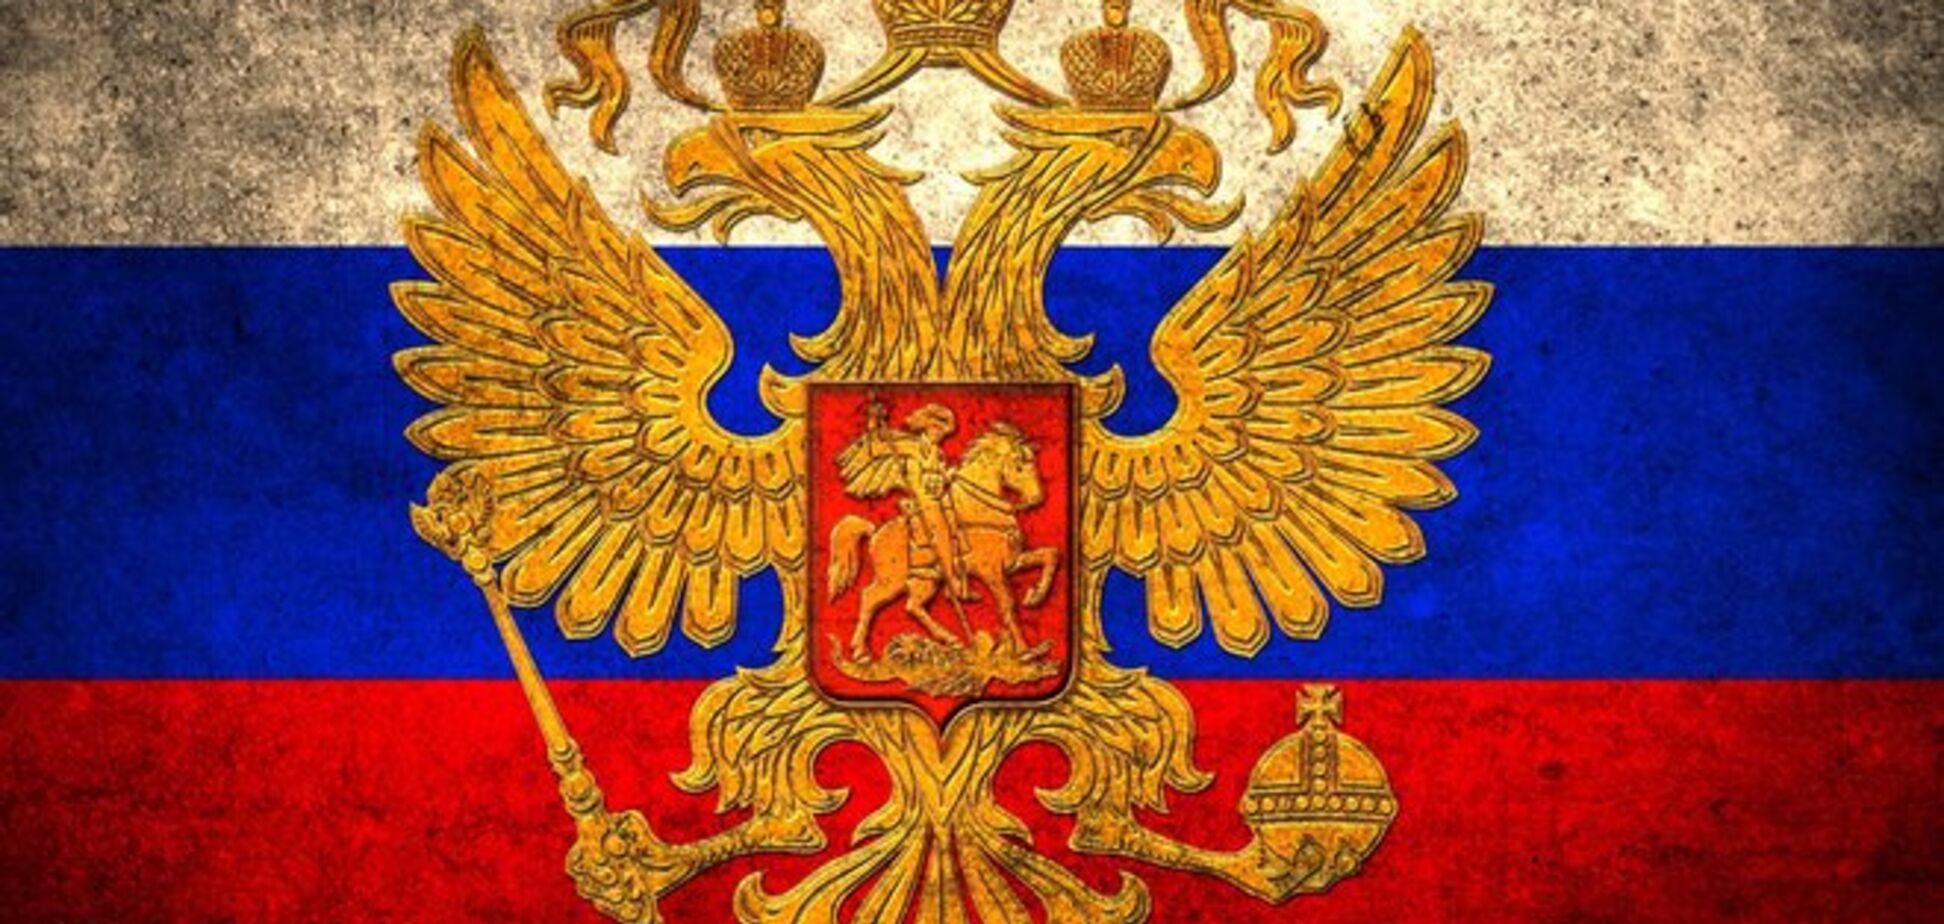 Нужен суд над 'Единой Россией', иначе конец стране и народу